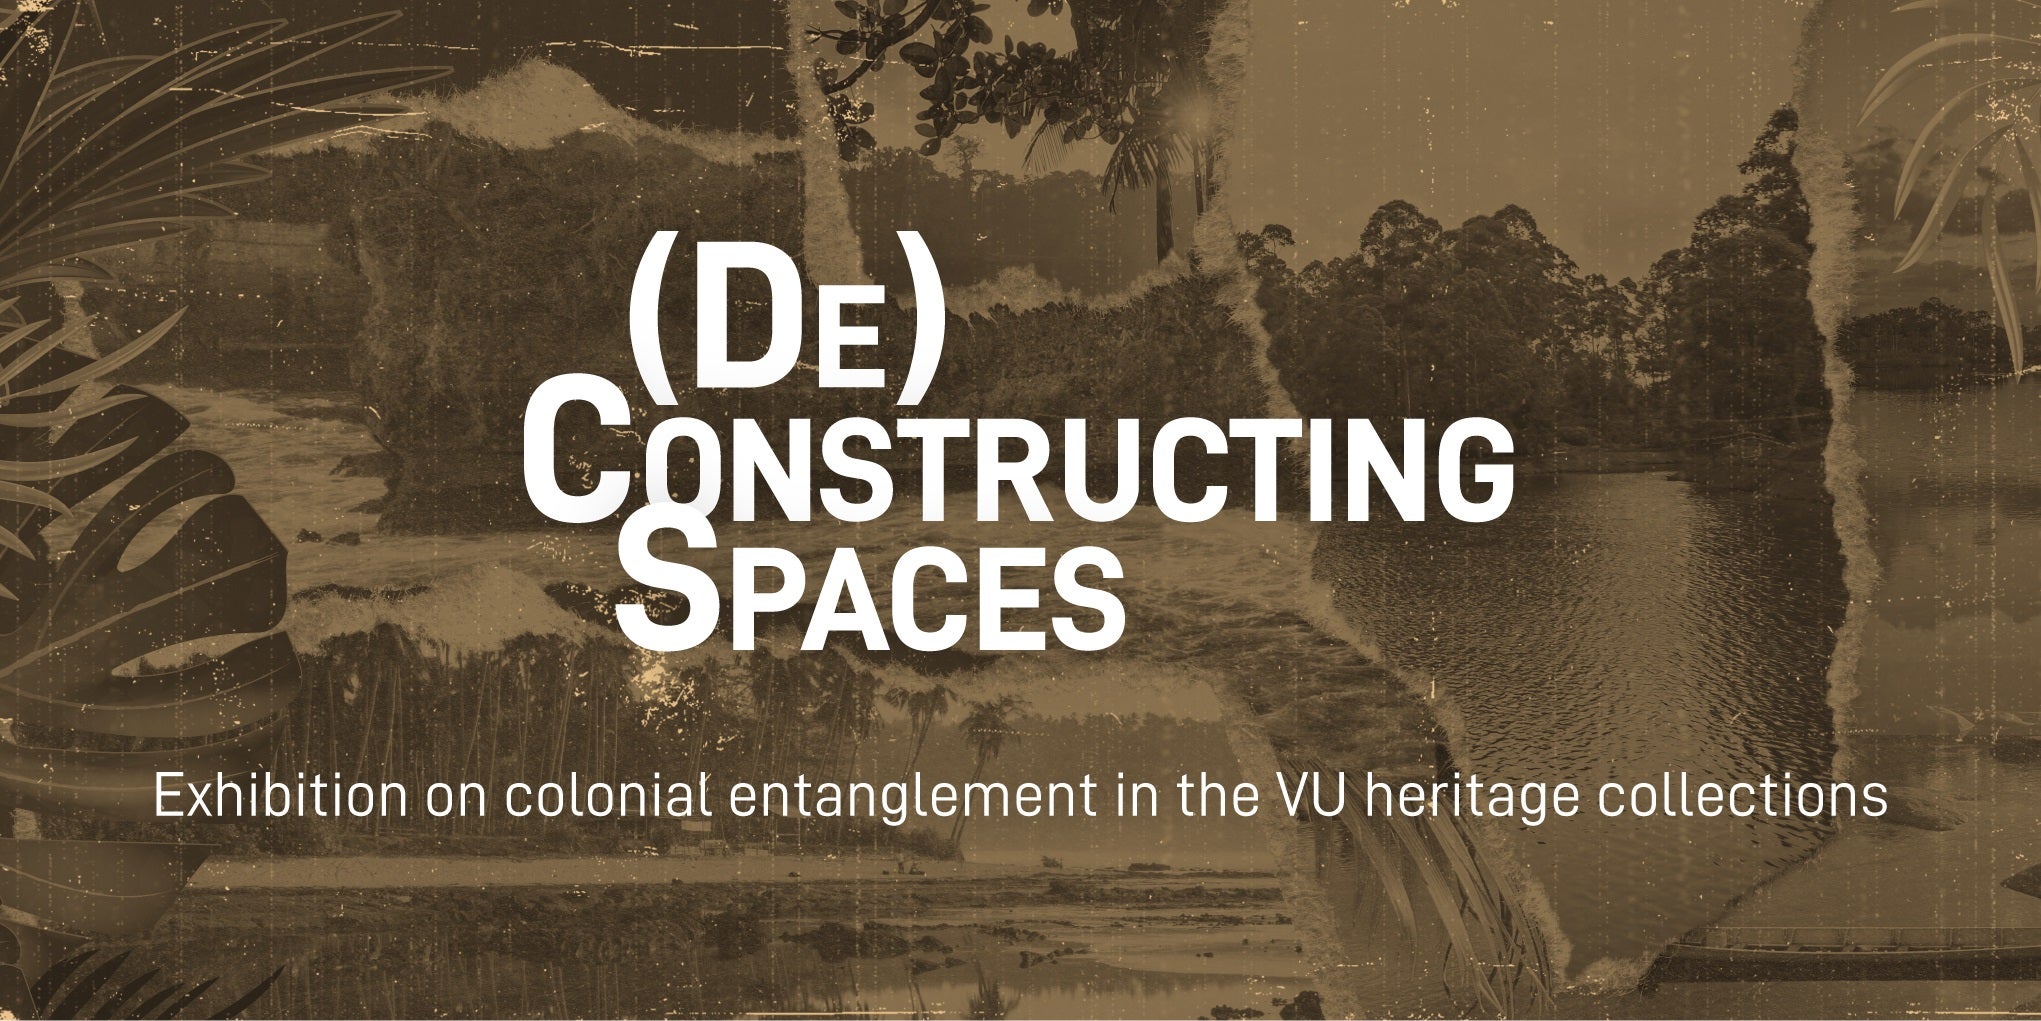 Een witgekleurde tekst met 'De-constructing spaces - exhibition on colonial entanglement in the VU heritage collections' met als achtergrond een collage van sepia foto's met koloniale taferelen